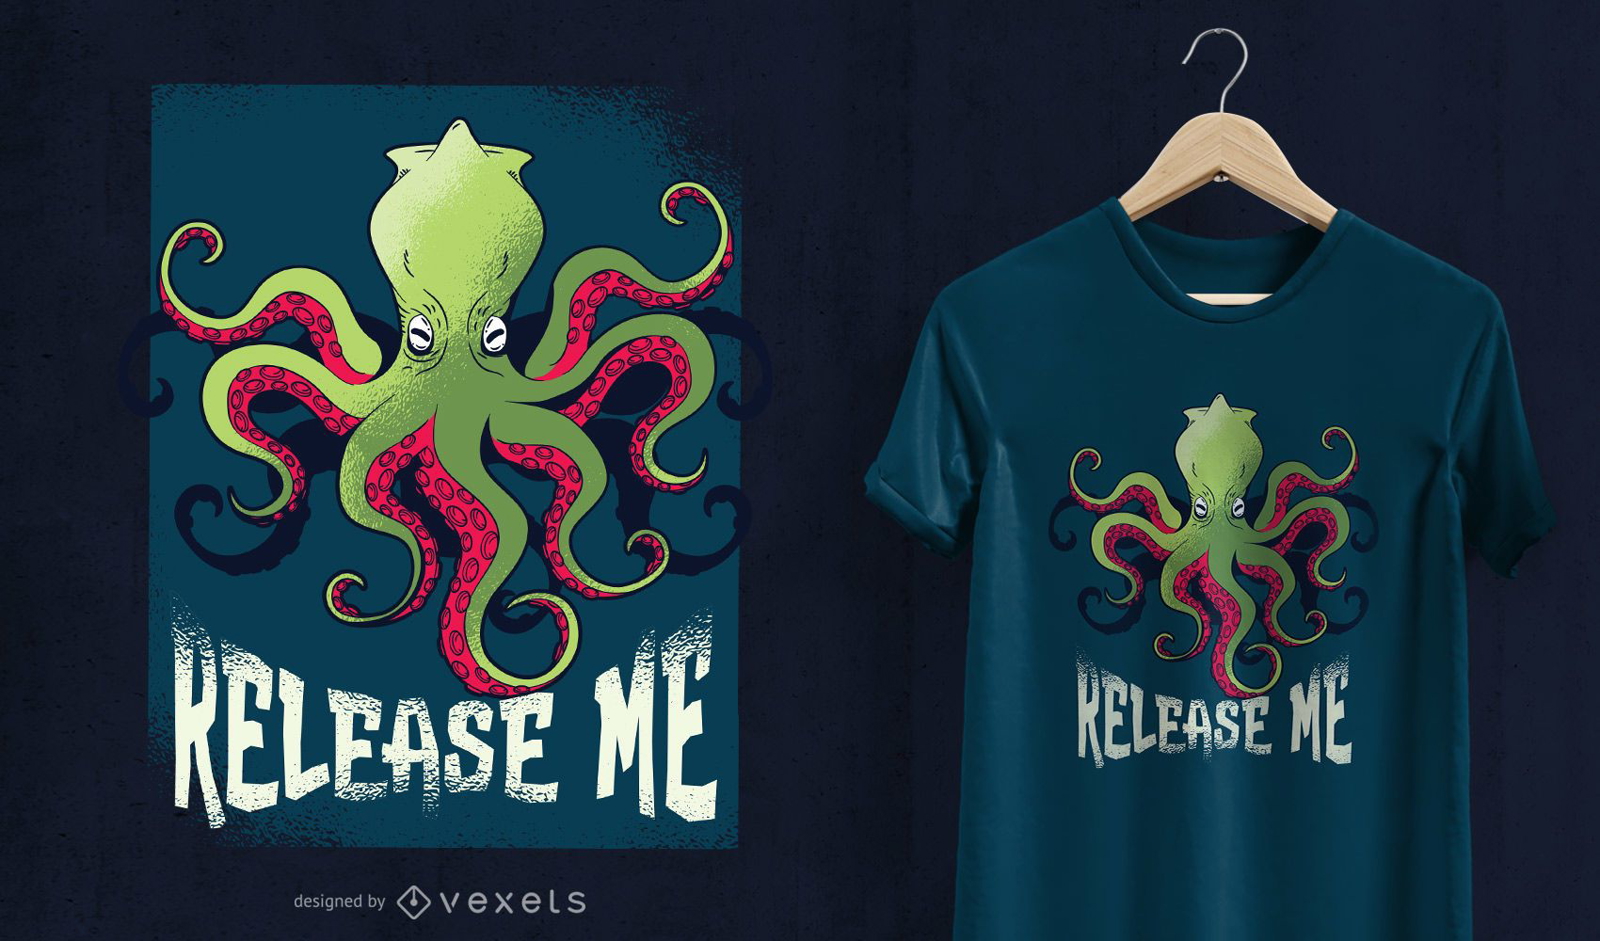 Kraken release me t-shirt design